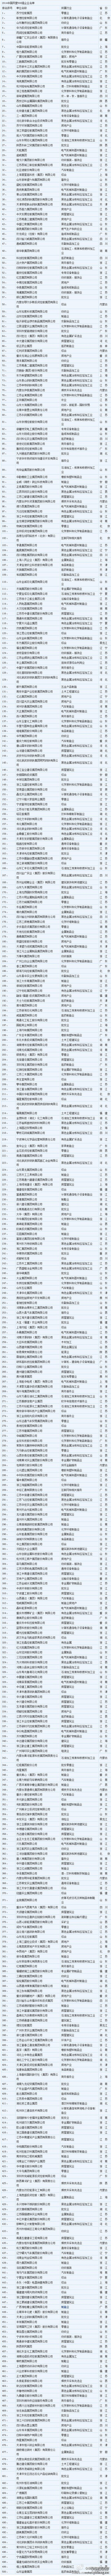 2014中国民营500强全名单